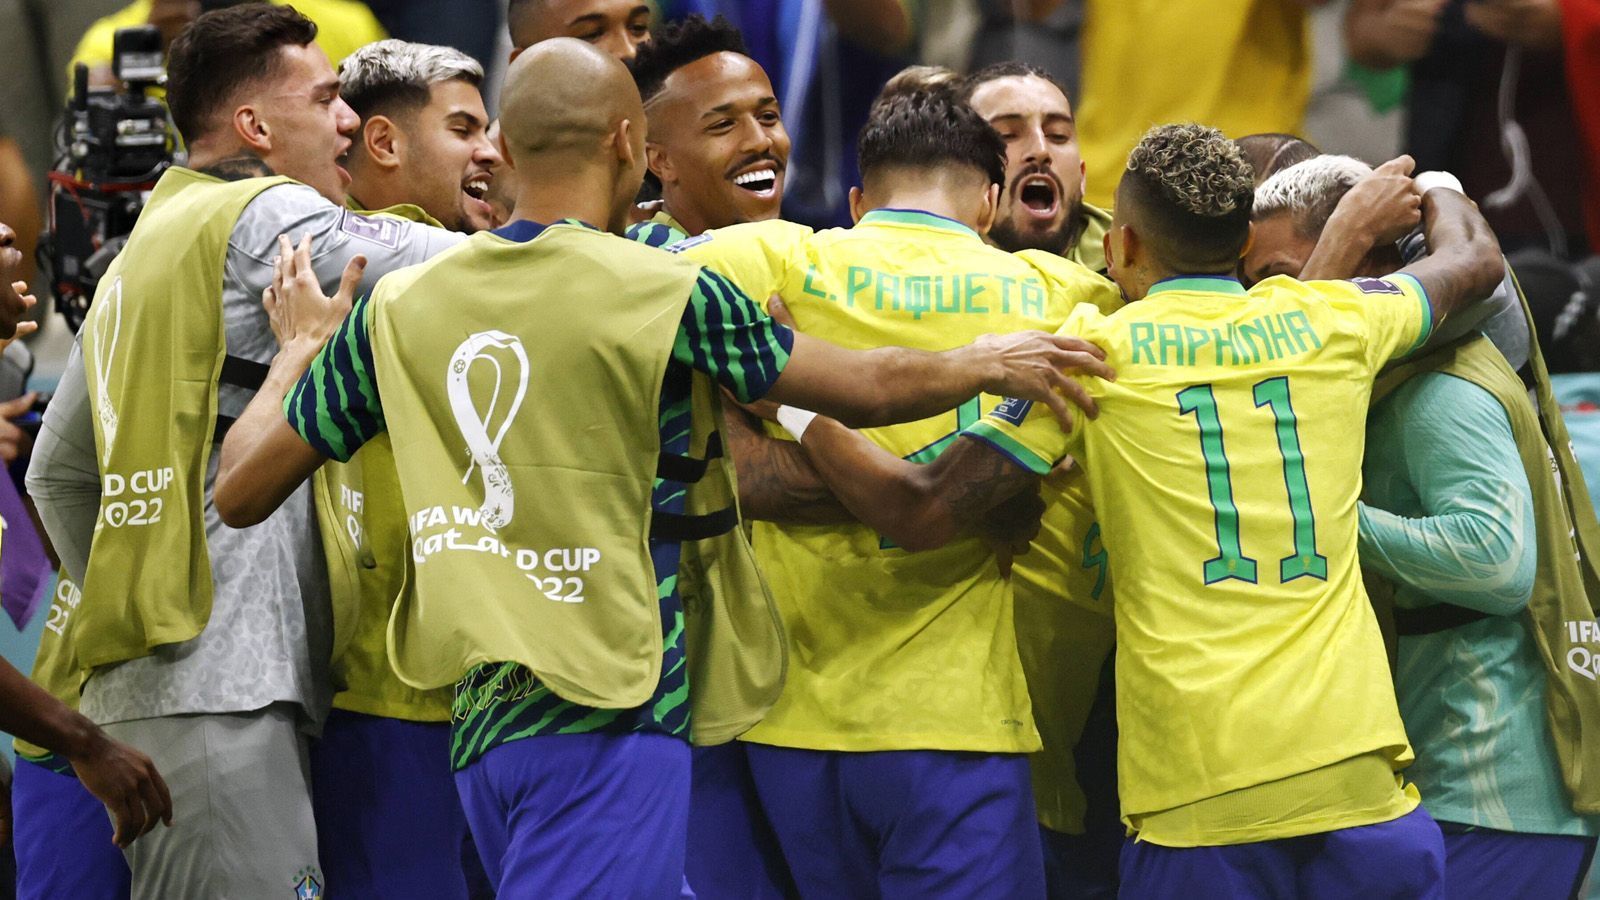 
                <strong>So gefährlich ist Brasilien wirklich - Die Erkenntnisse aus dem Auftaktspiel</strong><br>
                Brasilien ist mit einem 2:0 gegen Serbien in die WM gestartet. Doch was kann der Topfavorit auf den Titel? ran nennt die Erkenntnisse aus dem Auftaktspiel.
              